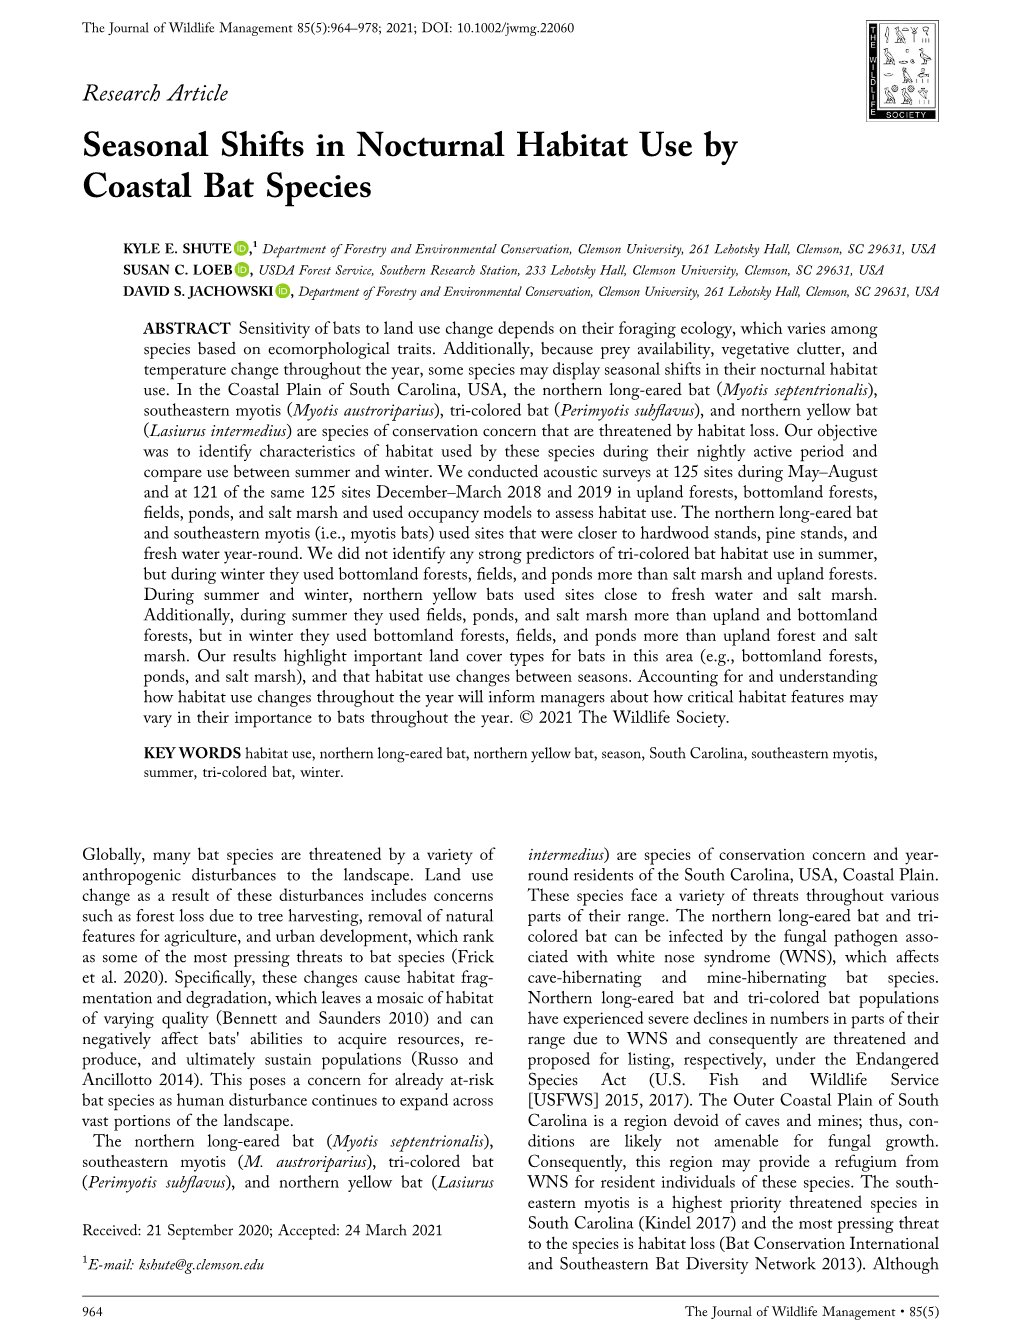 Seasonal Shifts in Nocturnal Habitat Use by Coastal Bat Species